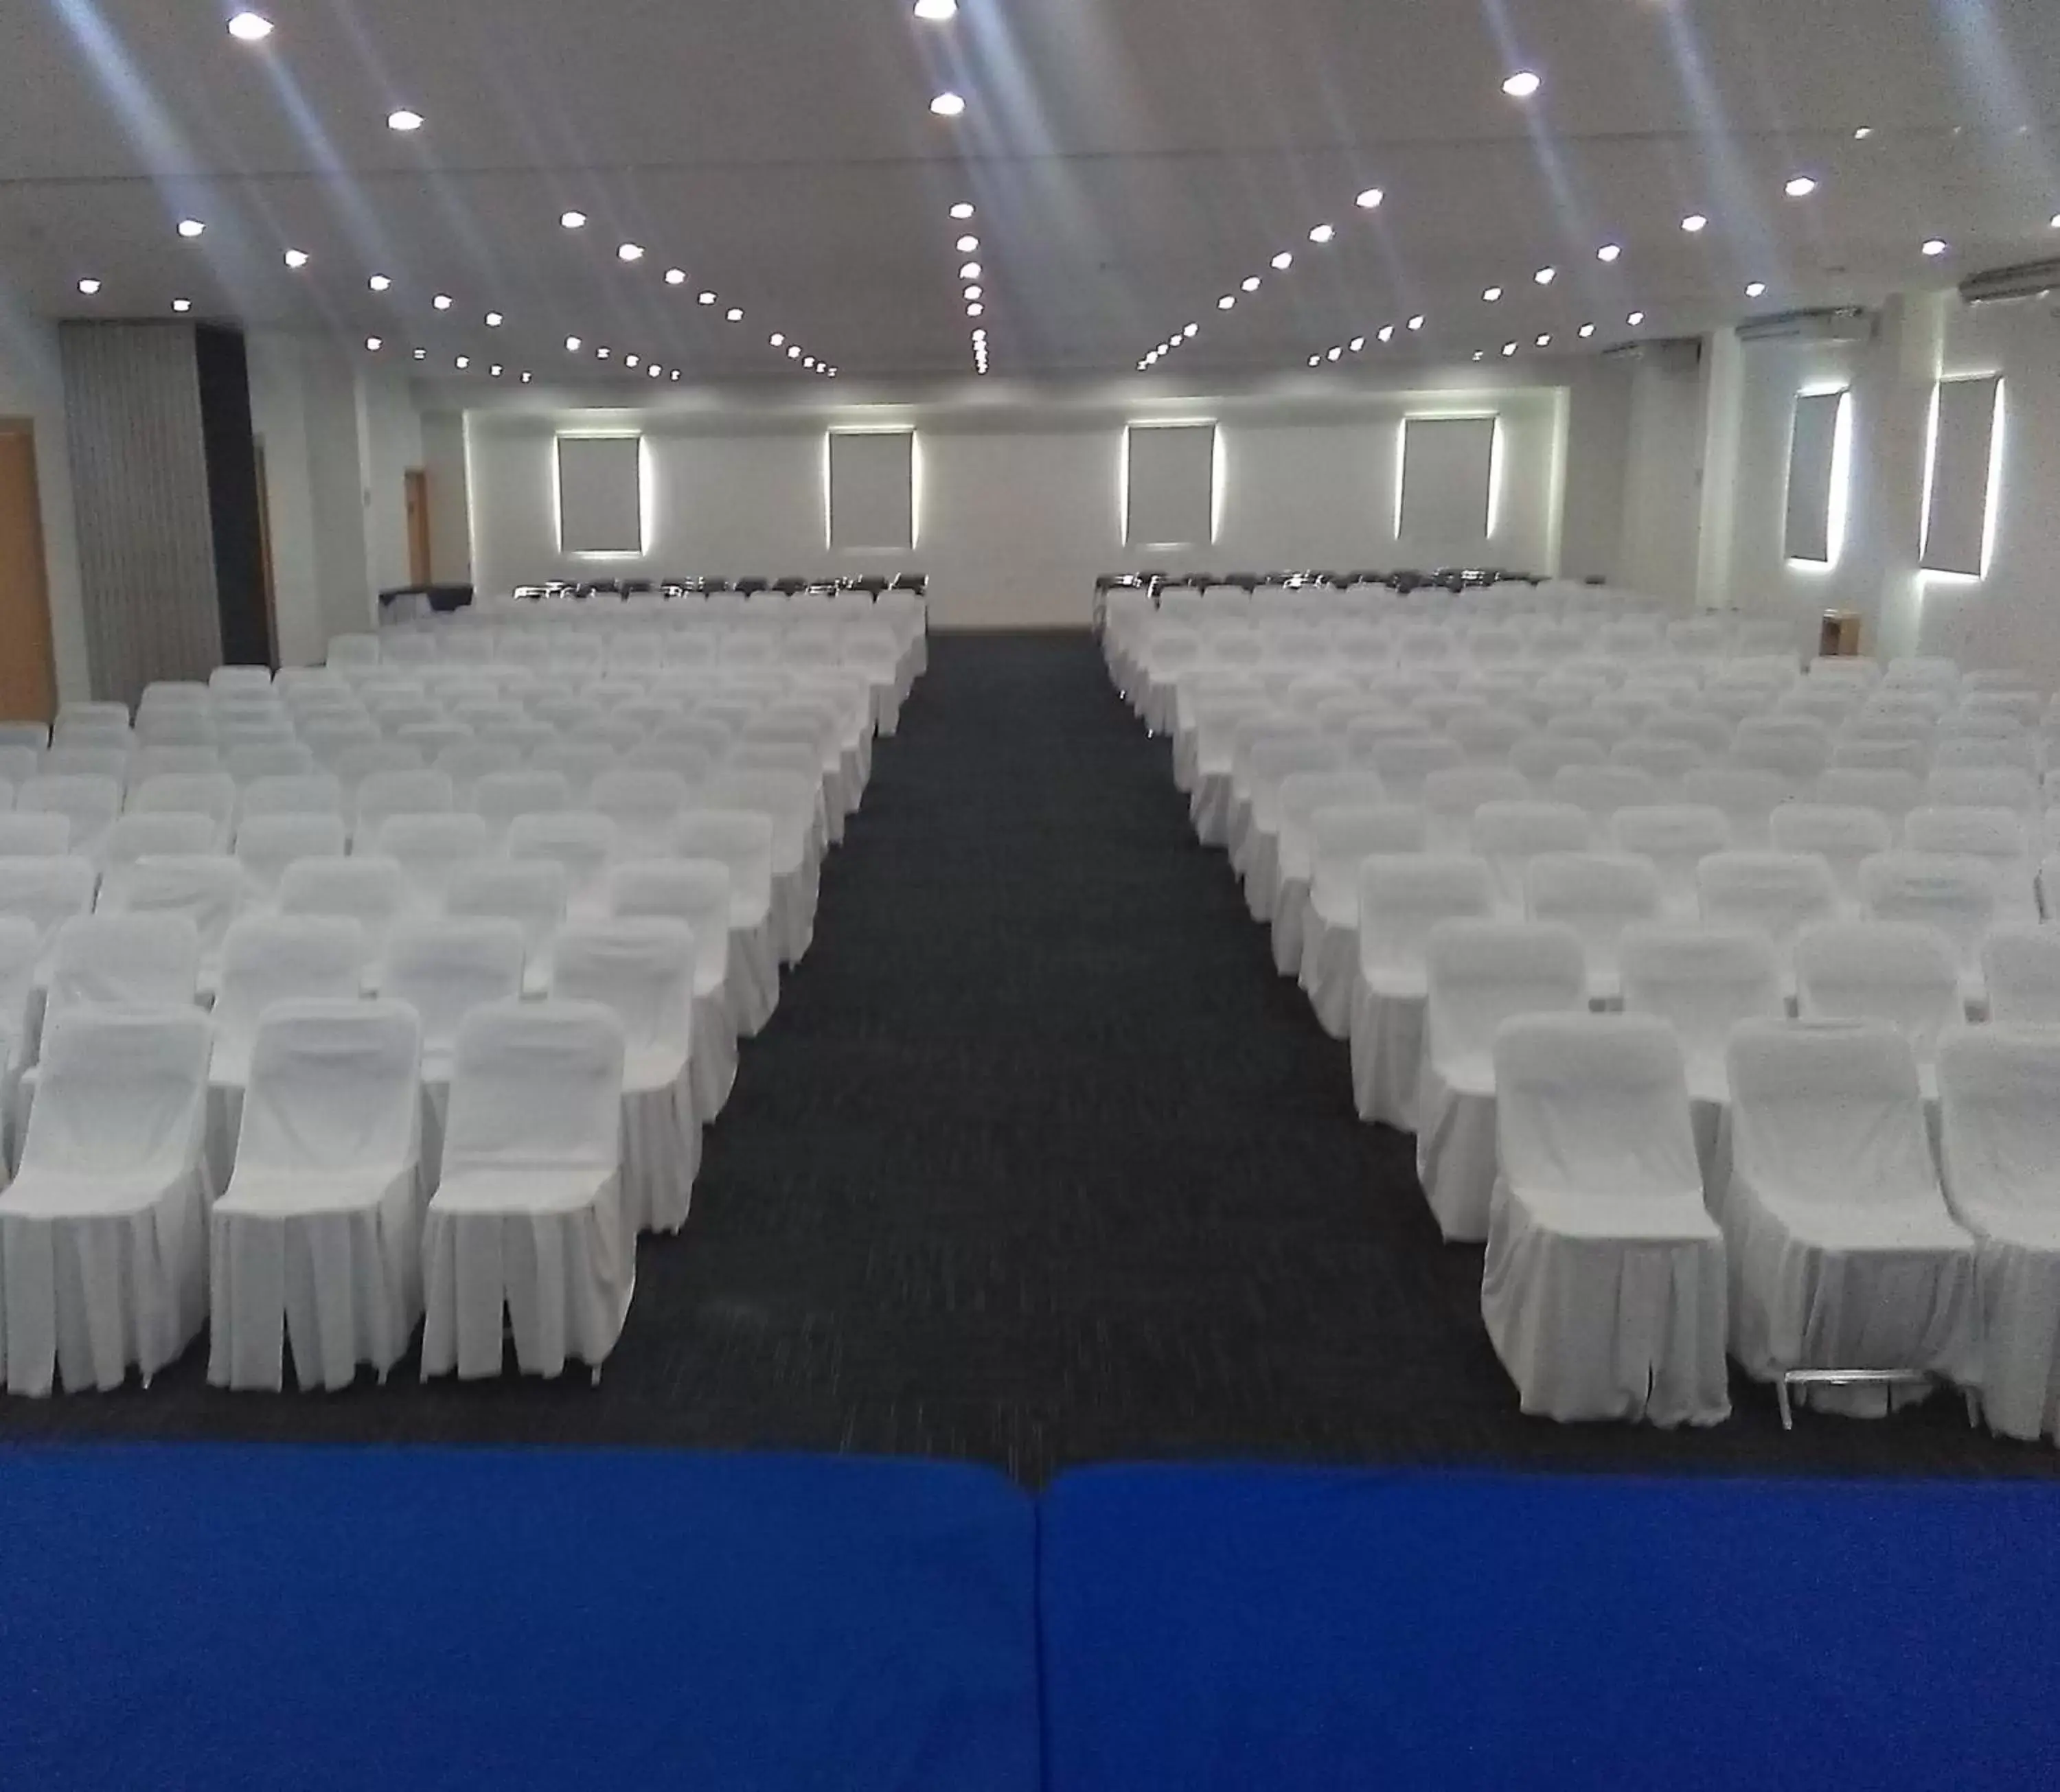 Meeting/conference room, Banquet Facilities in Sleep Inn Tuxtla